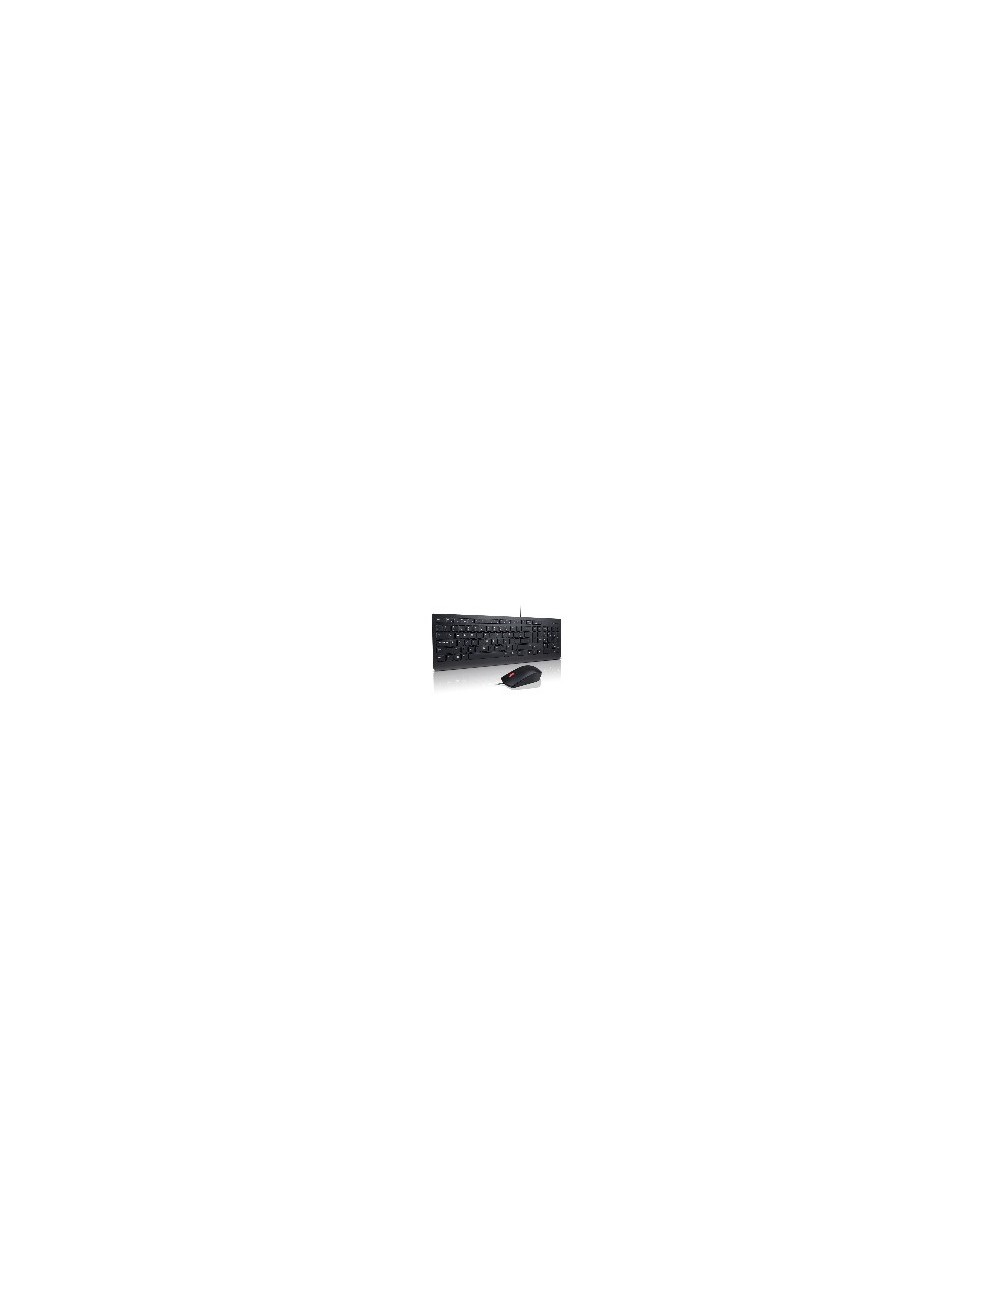 Lenovo 4X30L79922 clavier Souris incluse USB QWERTY Noir